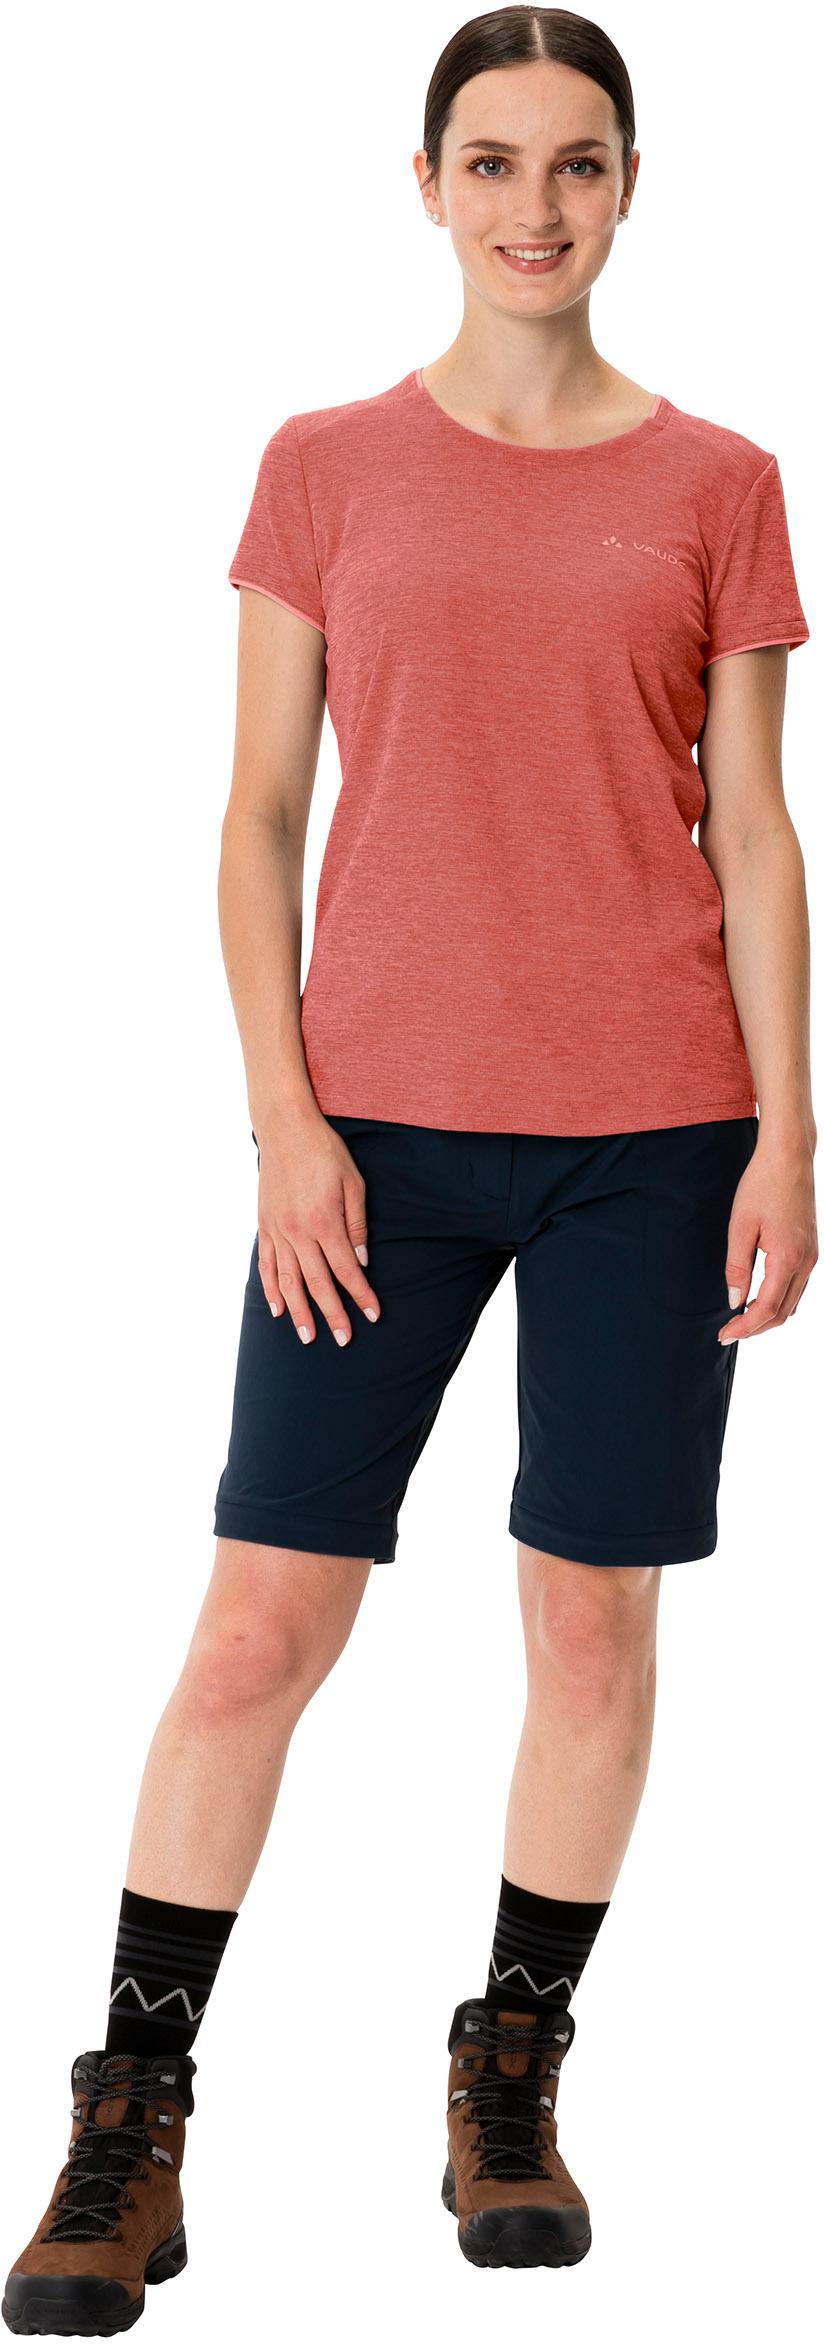 VAUDE Essential von Online im SportScheck hotchili Damen kaufen Shop Funktionsshirt